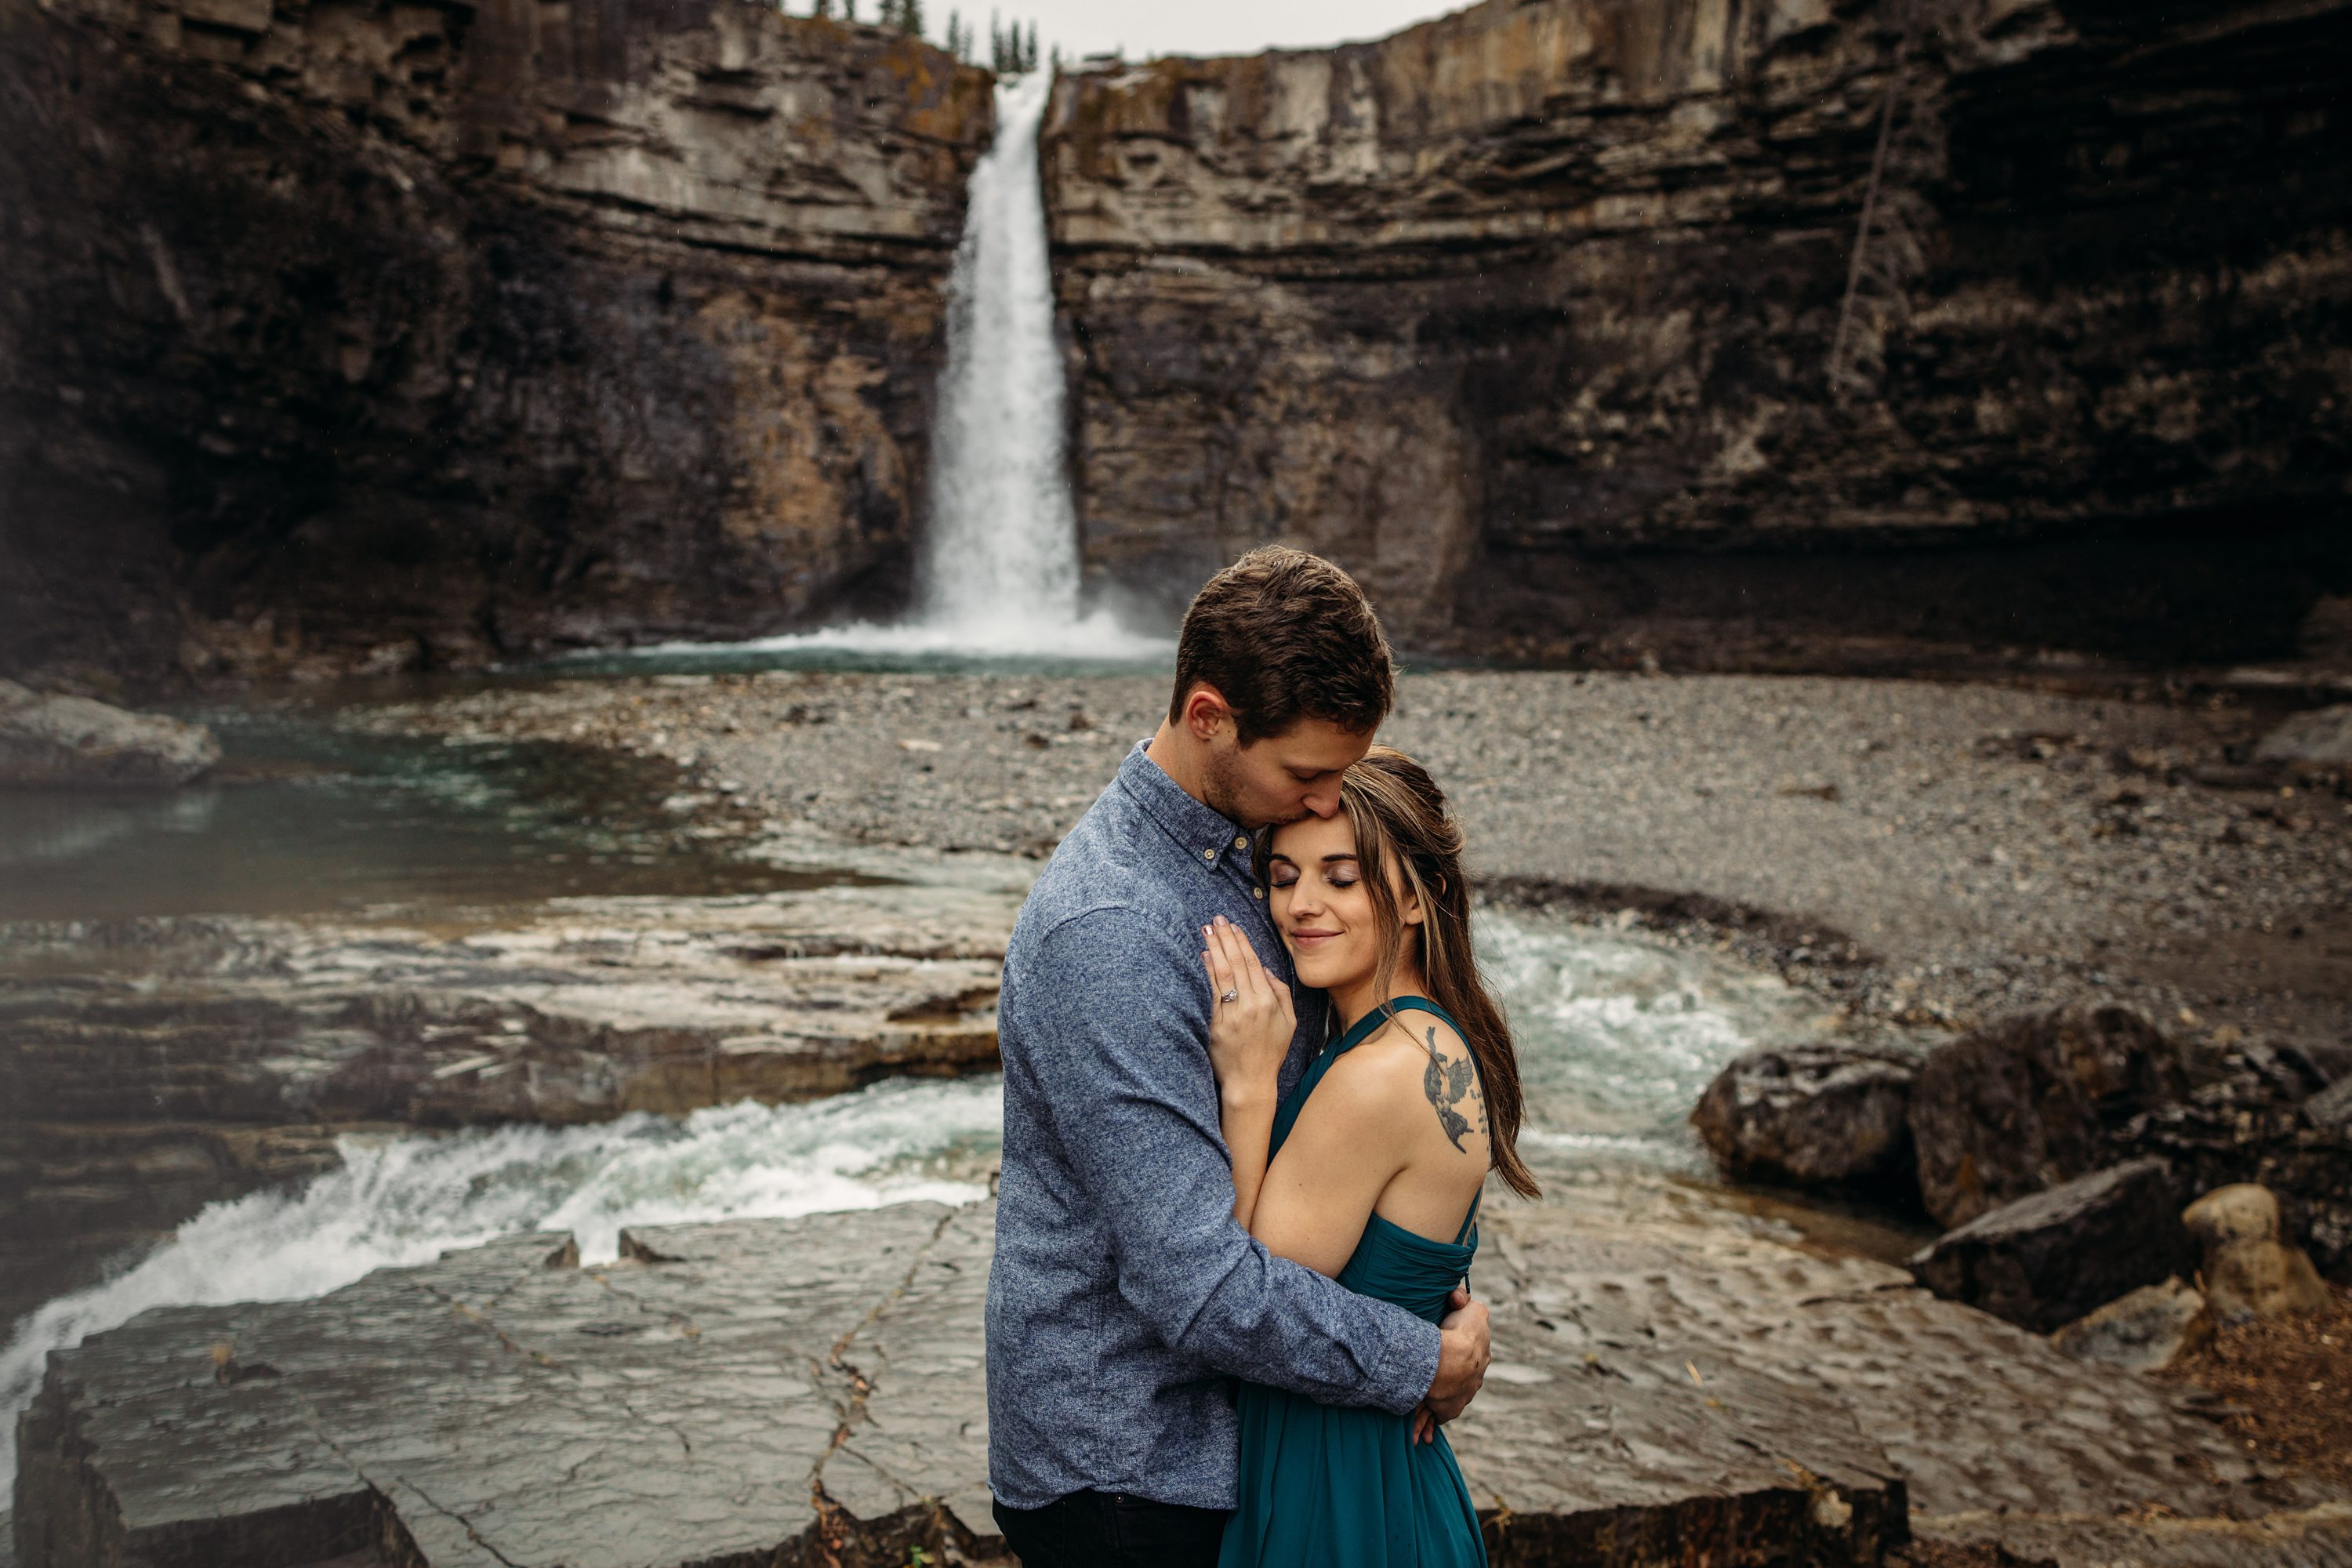  waterfall engagement photos, Calgary Alberta Photographer